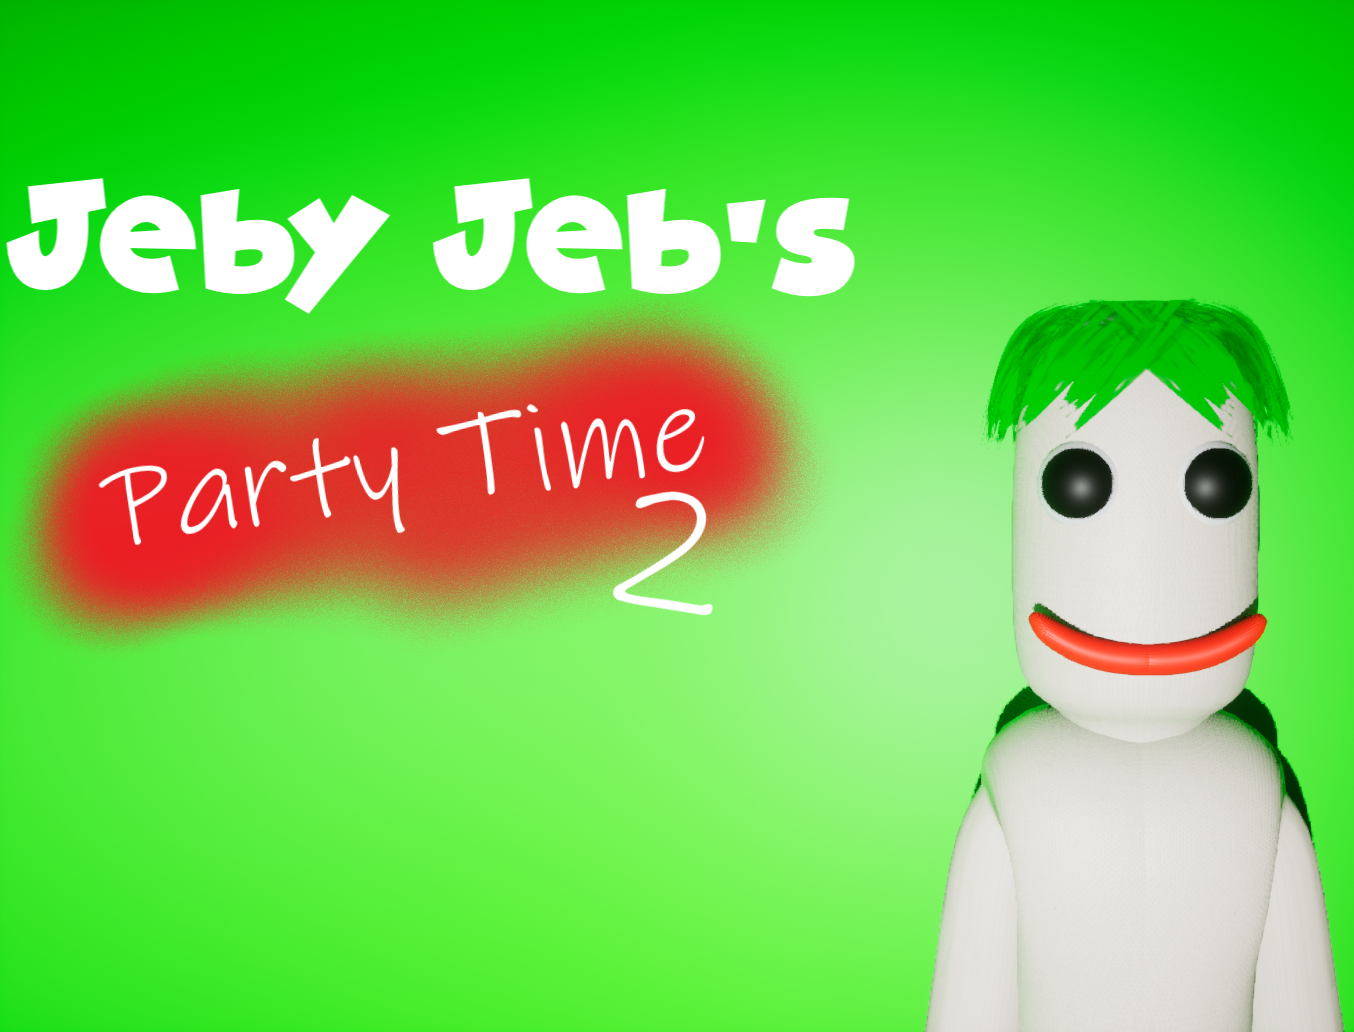 Jeby Jeb's Party Time 2